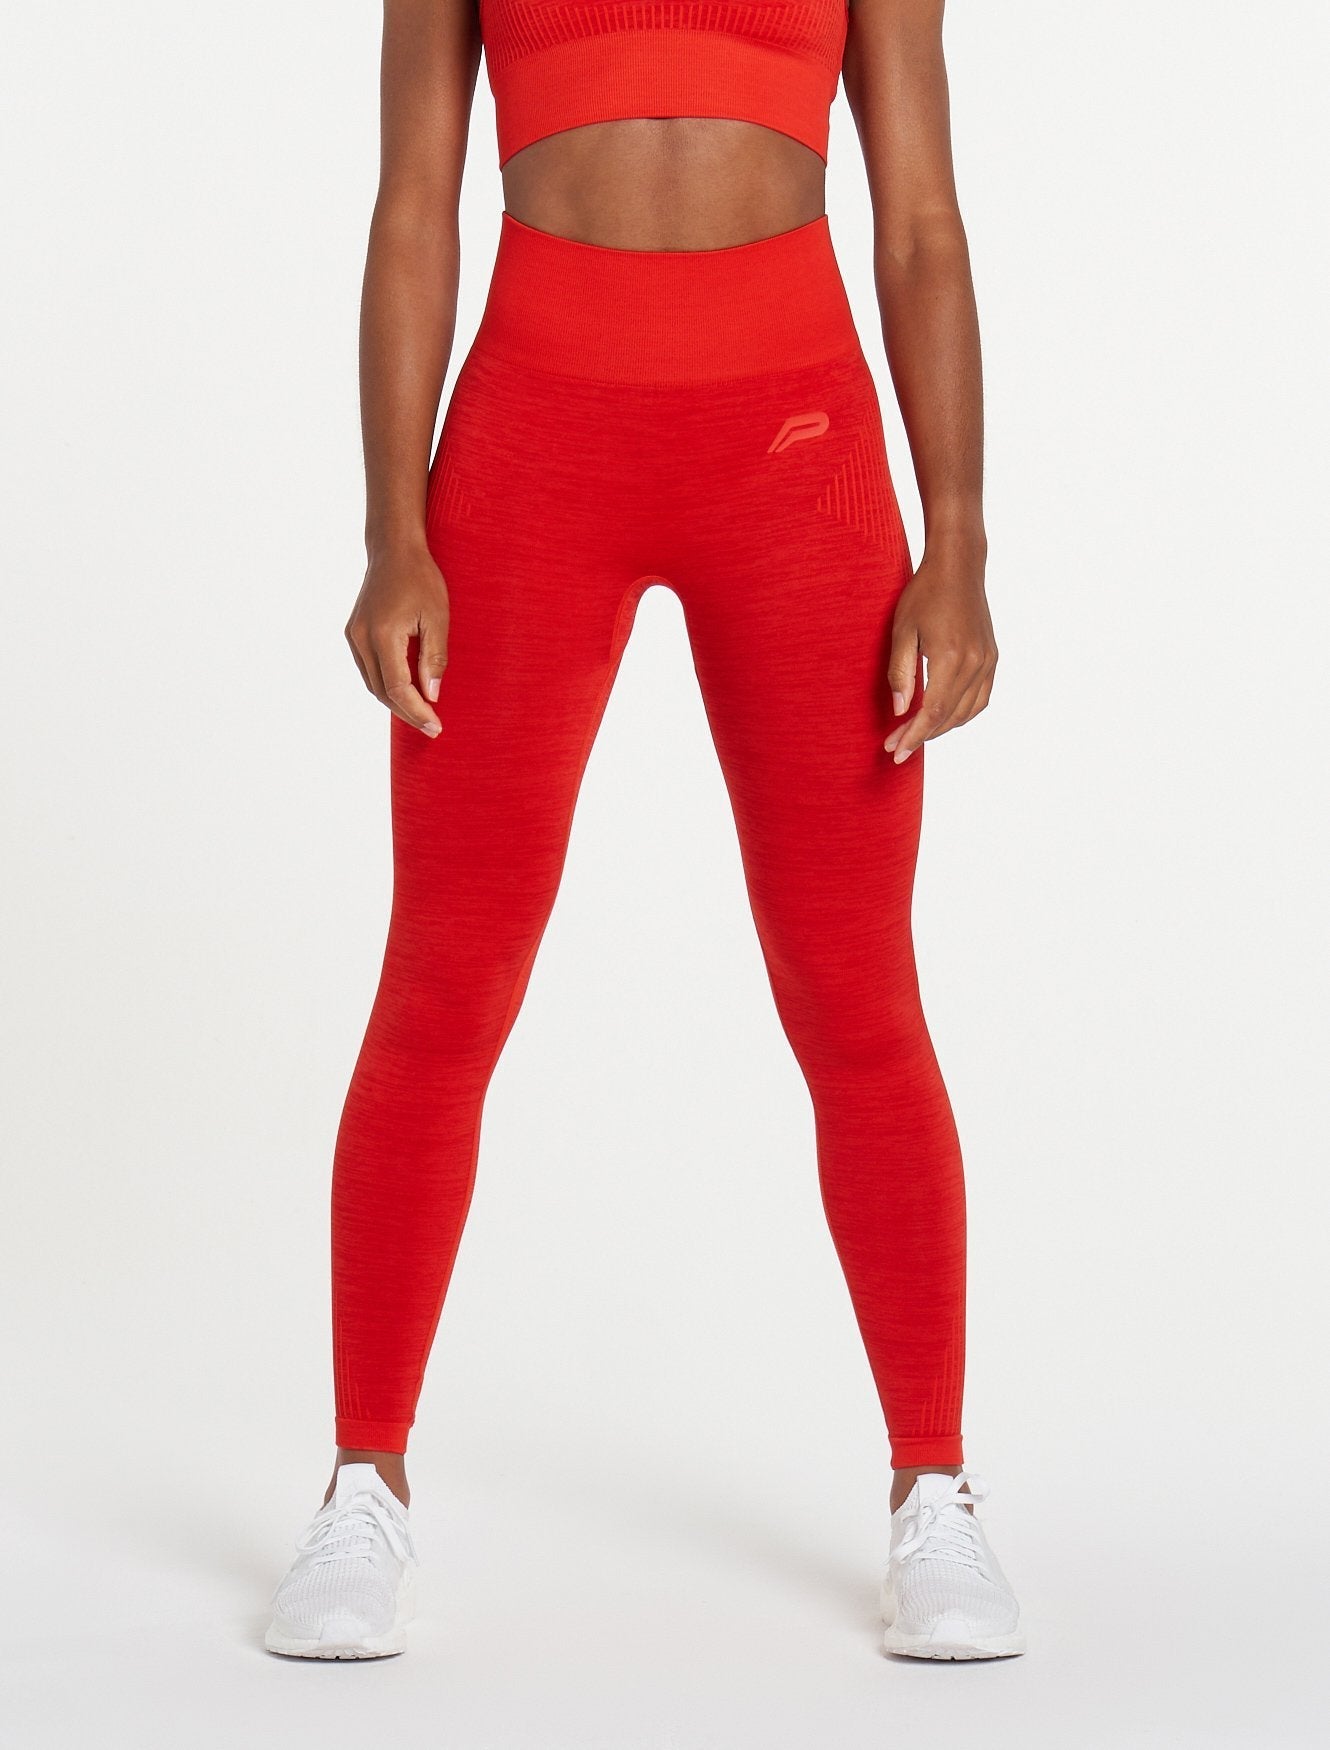 AirFlex Seamless Leggings - Red, Womens Gym Clothing